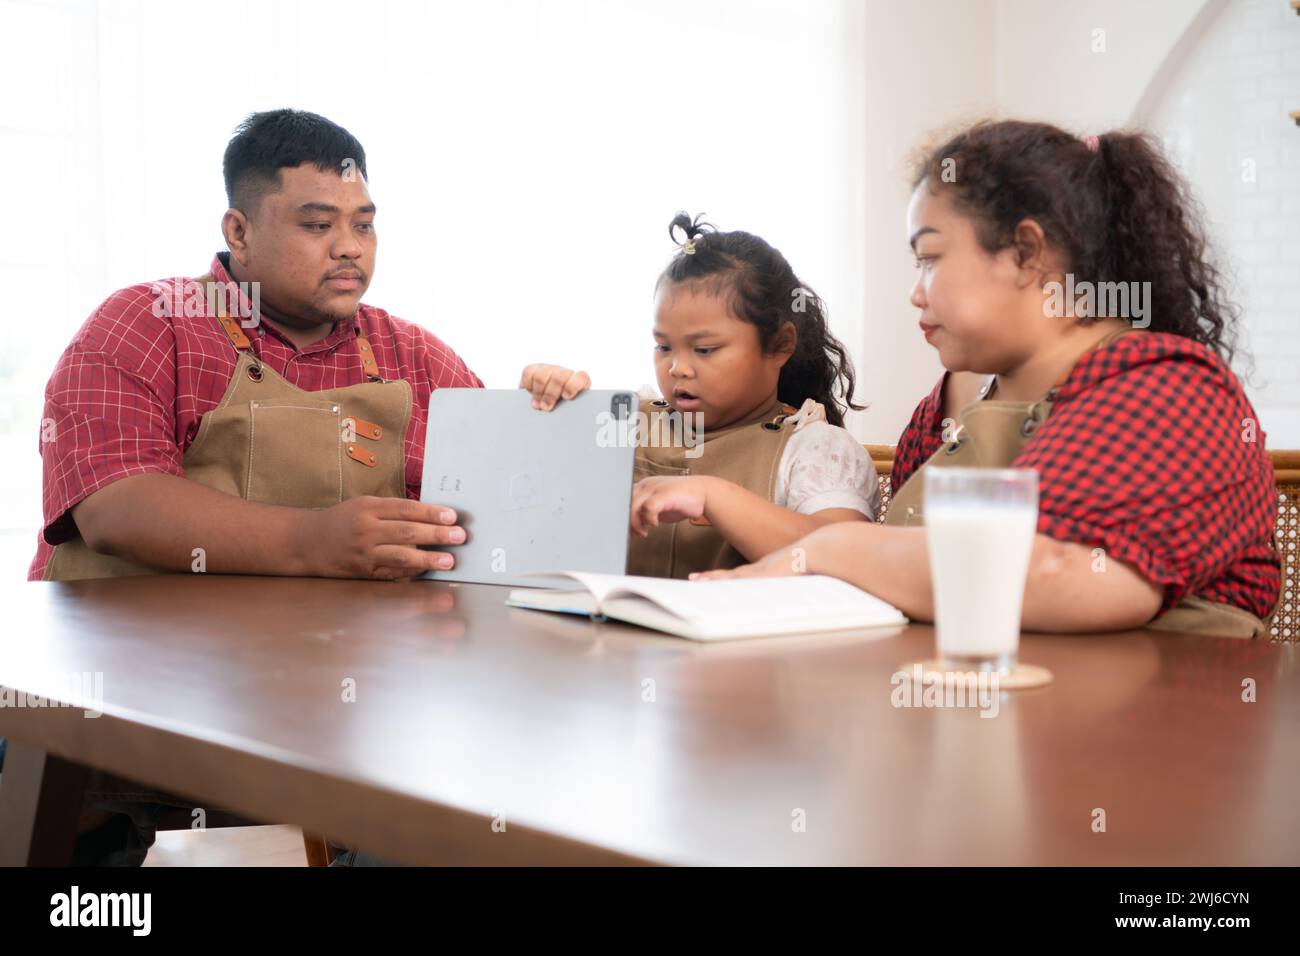 Una famiglia di grandi dimensioni con un padre che indossa una protesi alla gamba, assiste felicemente un bambino con i compiti e si diverte insieme Foto Stock